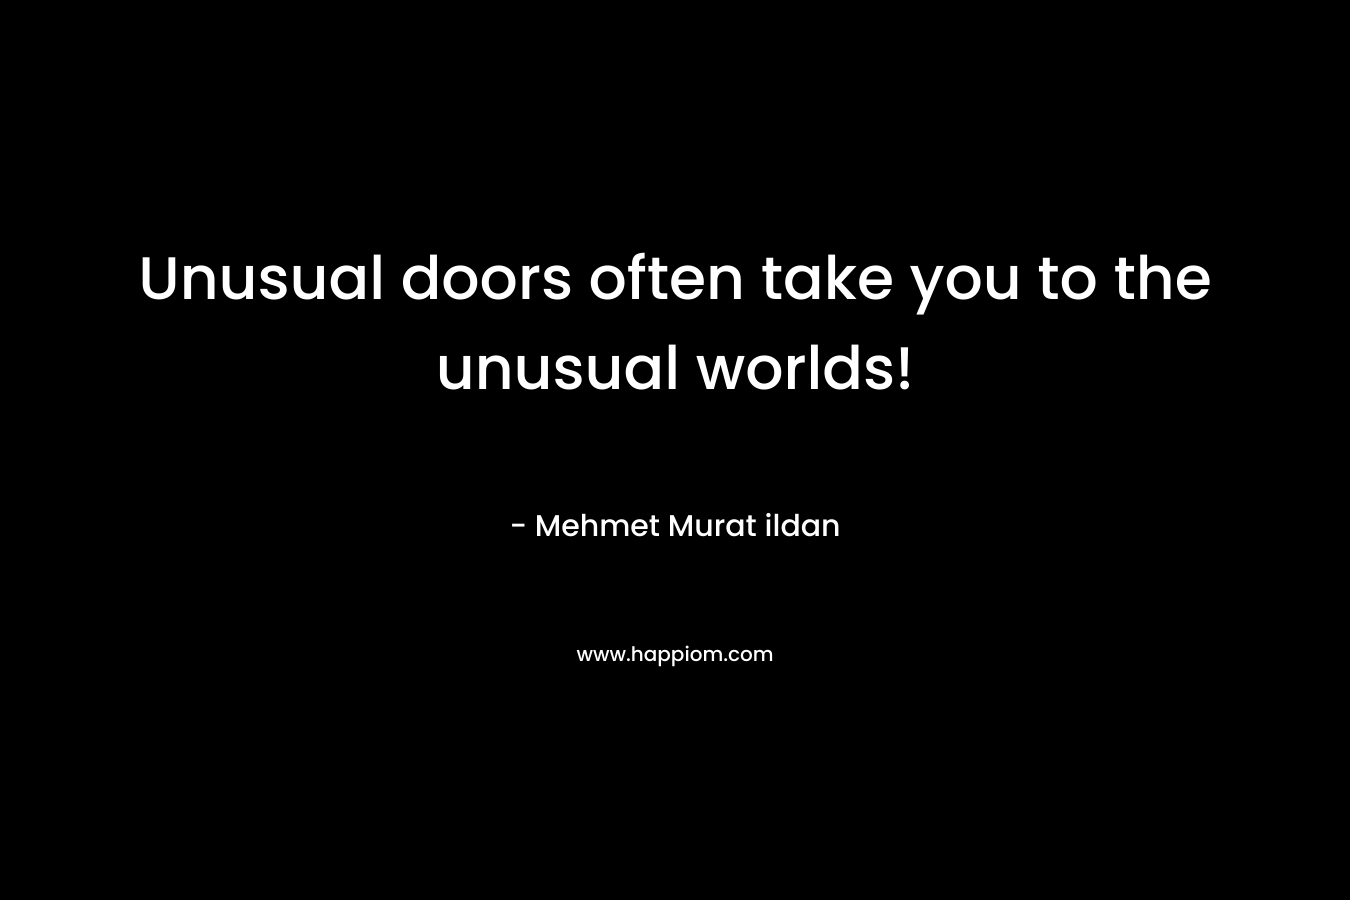 Unusual doors often take you to the unusual worlds! – Mehmet Murat ildan